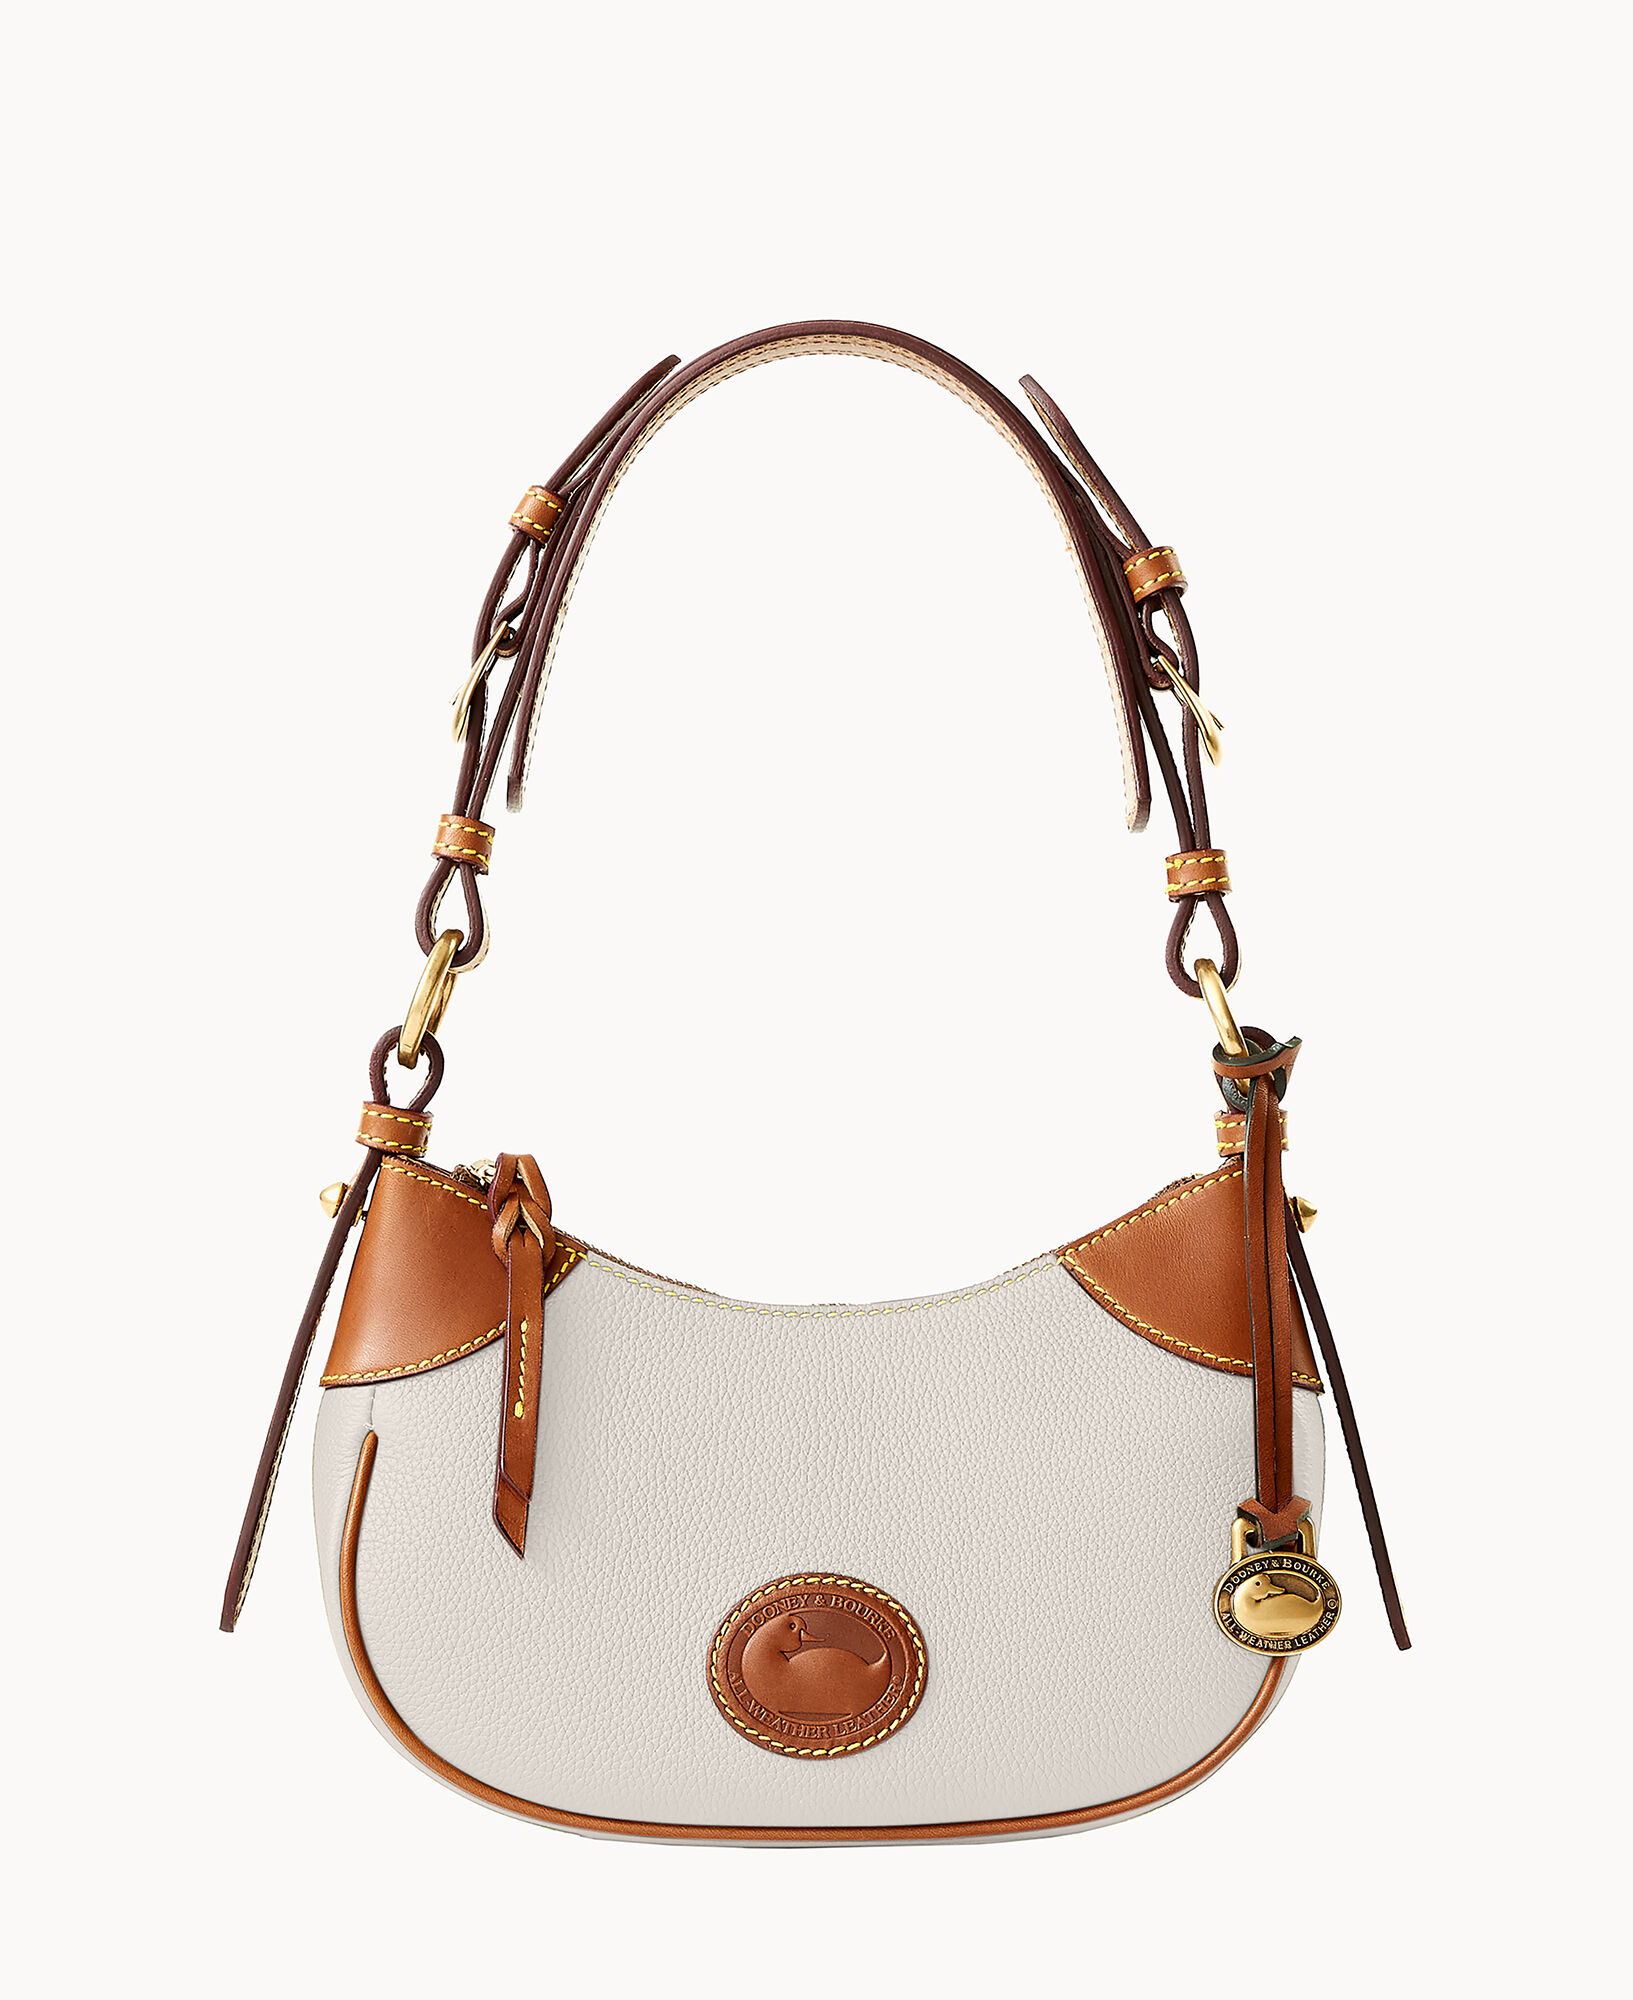 Detachable Dooney & Bourke Handbags, Bags